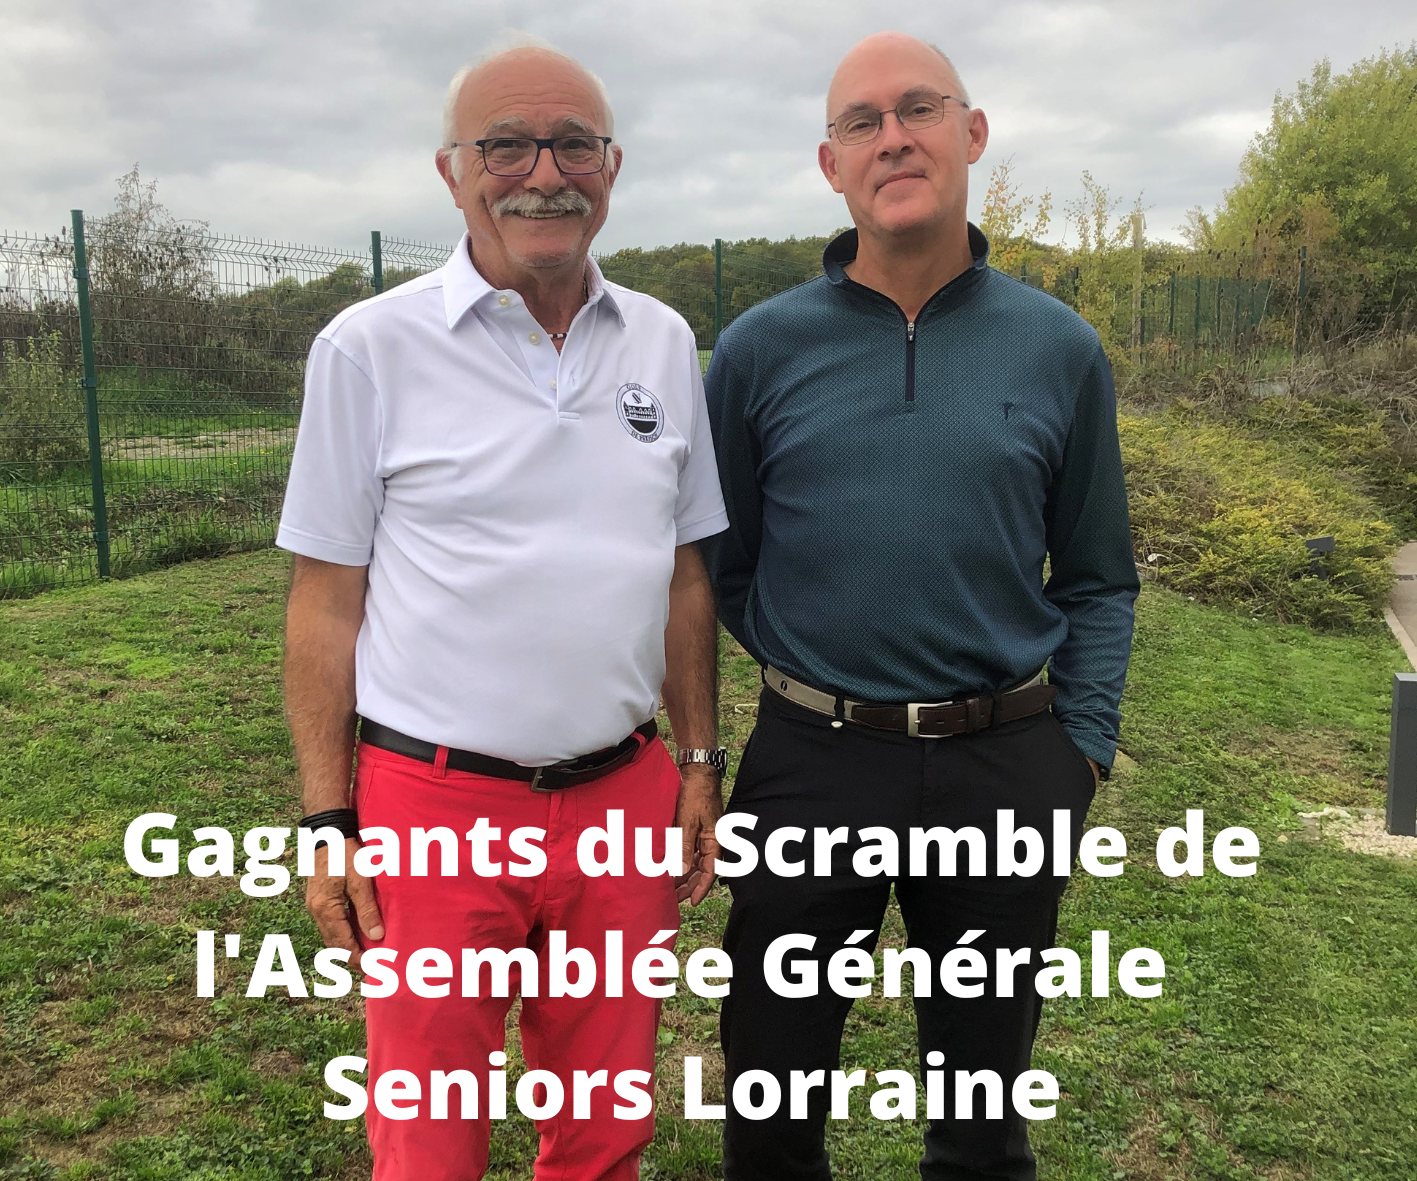 Scramble Assemblée Générale des Seniors Lorraine 